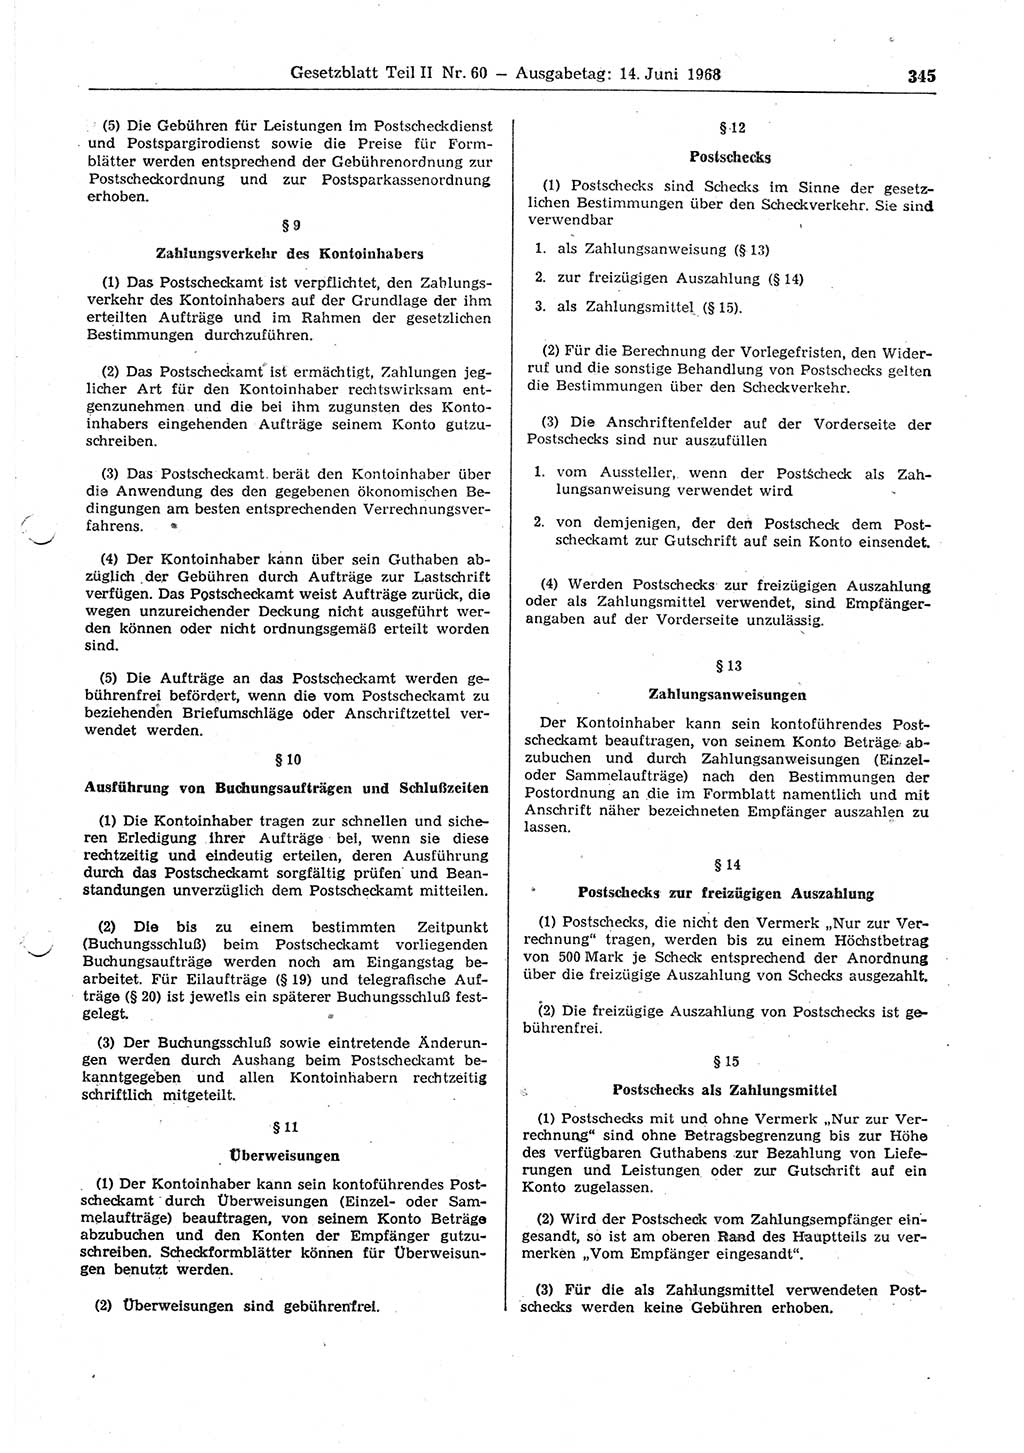 Gesetzblatt (GBl.) der Deutschen Demokratischen Republik (DDR) Teil ⅠⅠ 1968, Seite 345 (GBl. DDR ⅠⅠ 1968, S. 345)